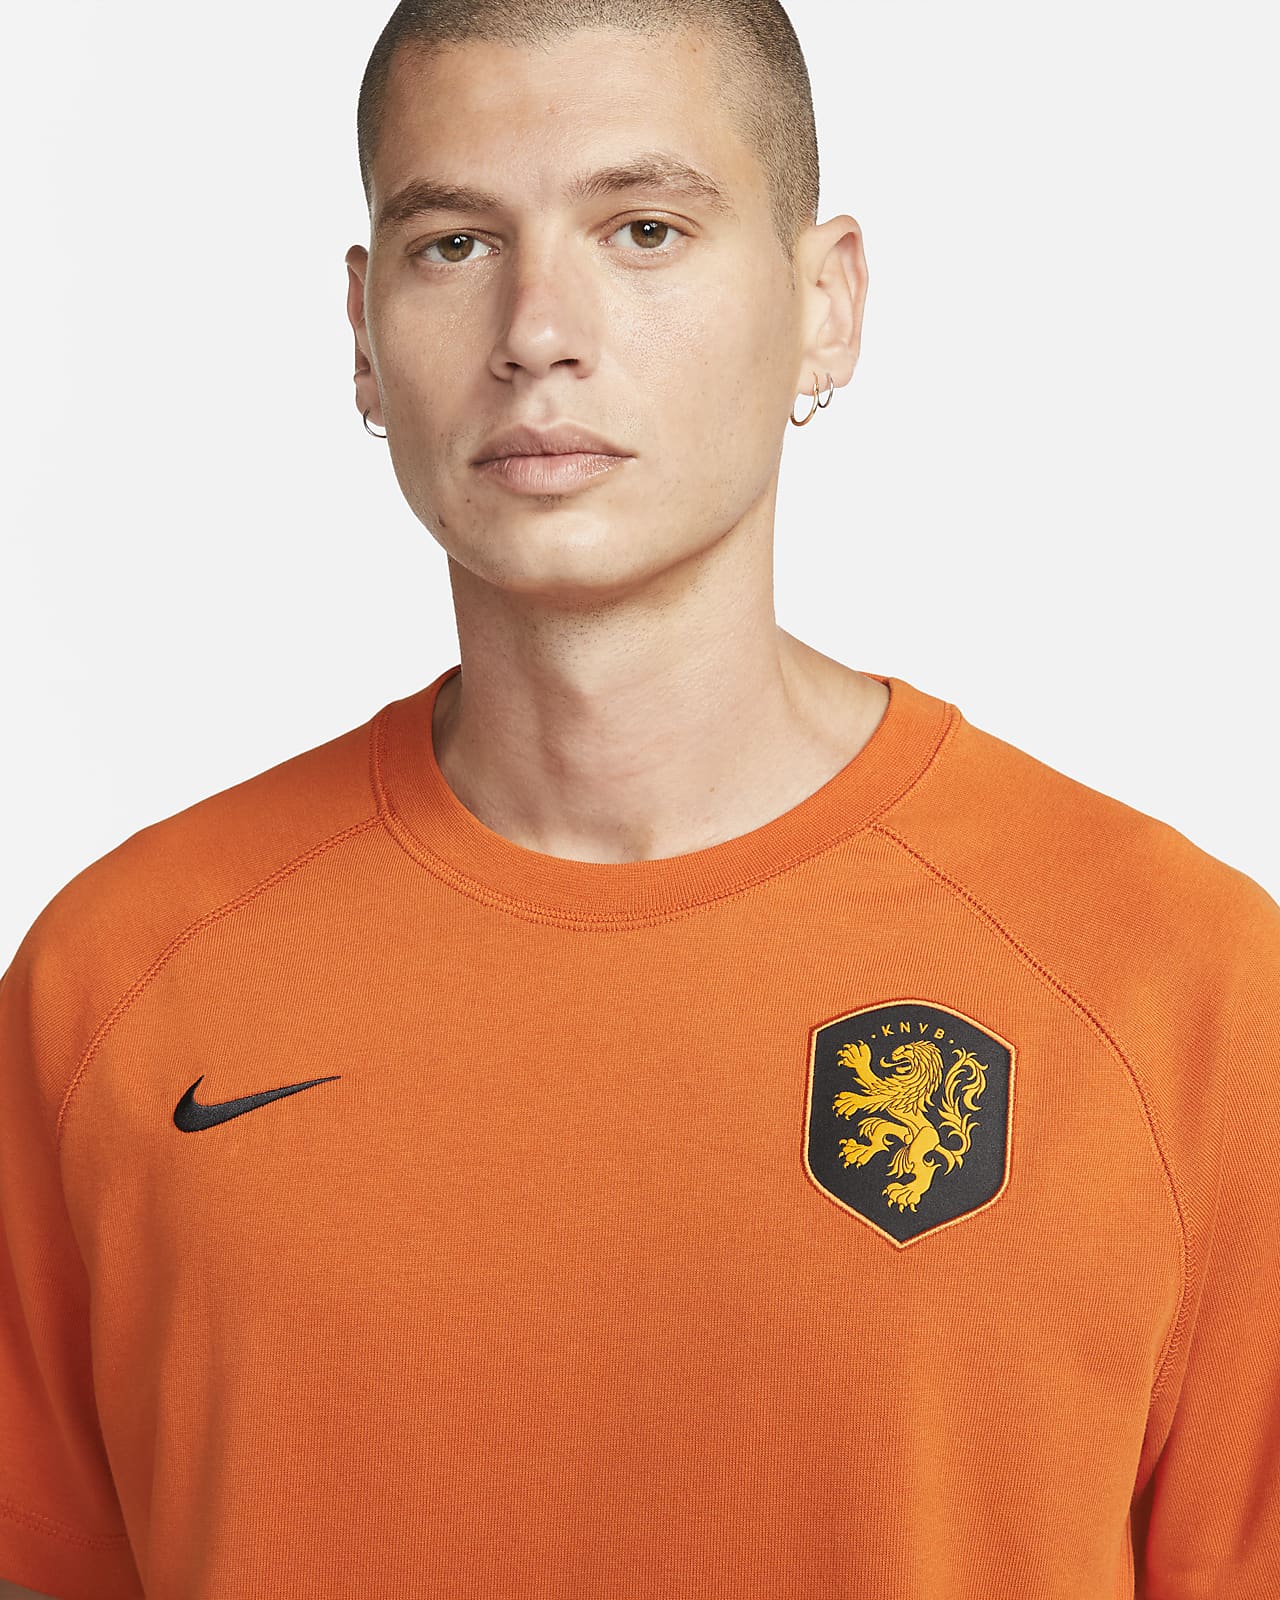 Netherlands KNVB Soccer Nike Slim Fit T Shirt - Size Large - Orange